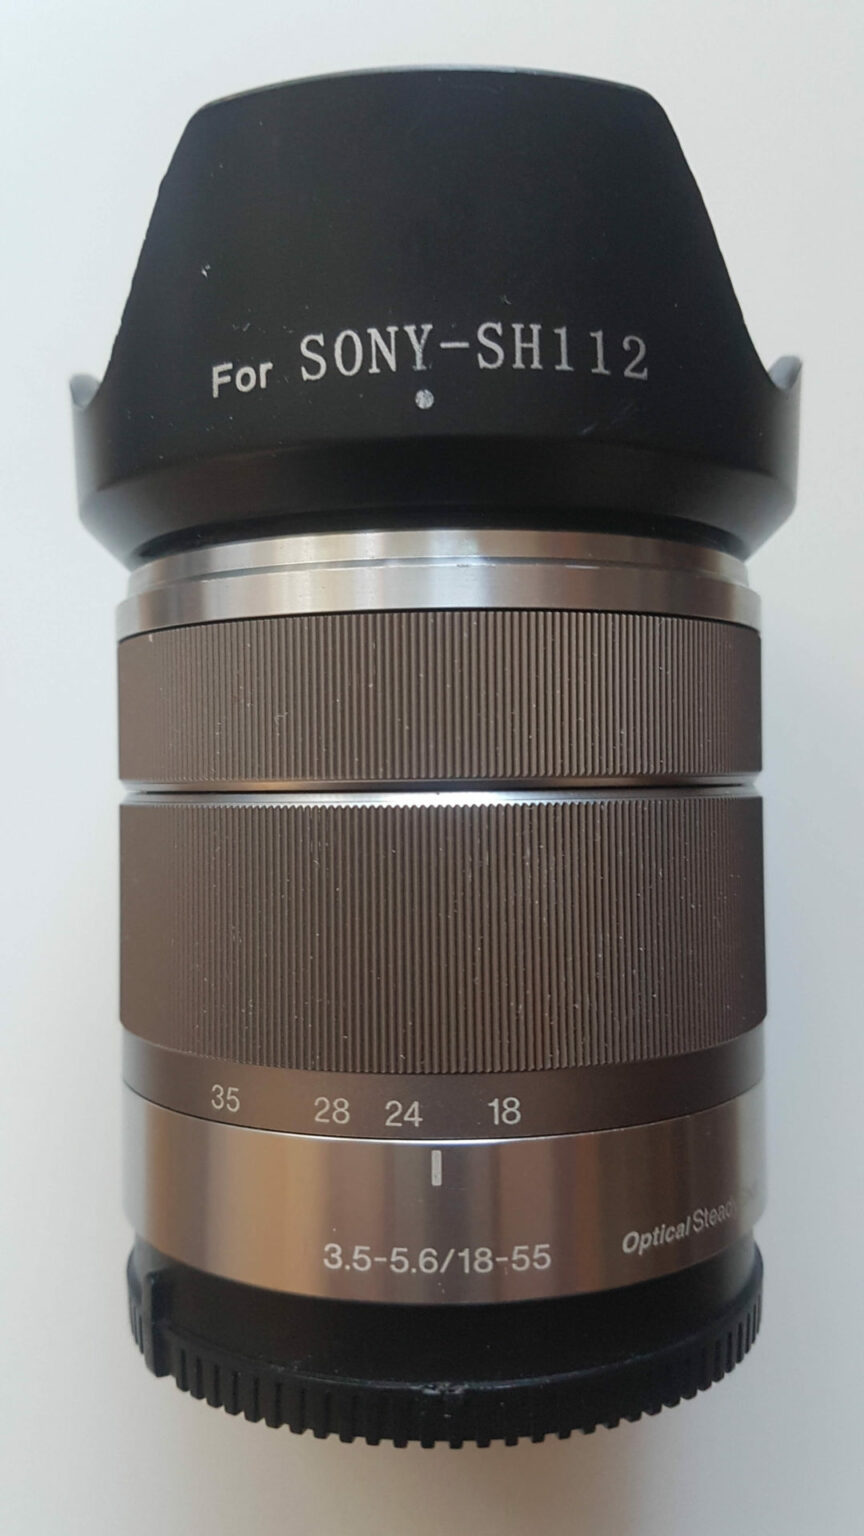 Silver SEL1855 E Mount 18-55mm F/3.5-5.6 OSS Zoom Lens for Sony